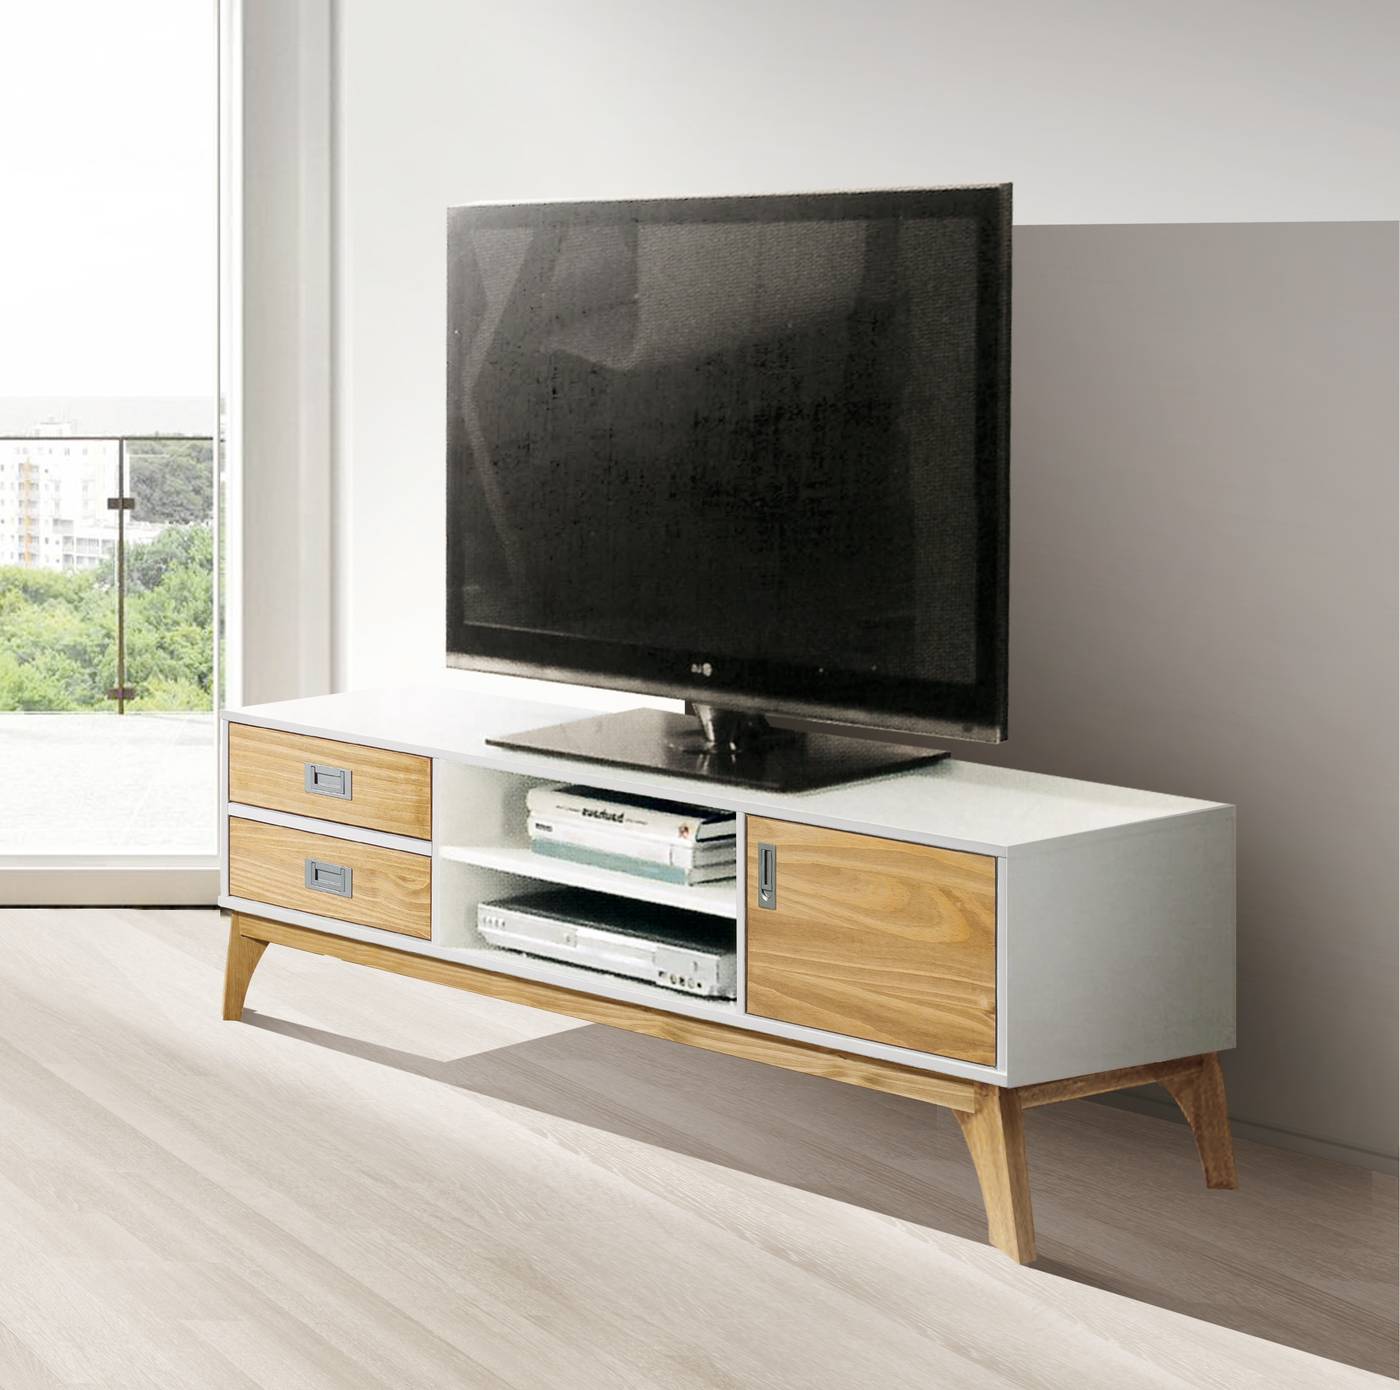 Mesa TV 150 Blanca-Roble - Mesa de TV para salón/comedor lacada en blanco, con puerta, cajones y patas de madera maciza